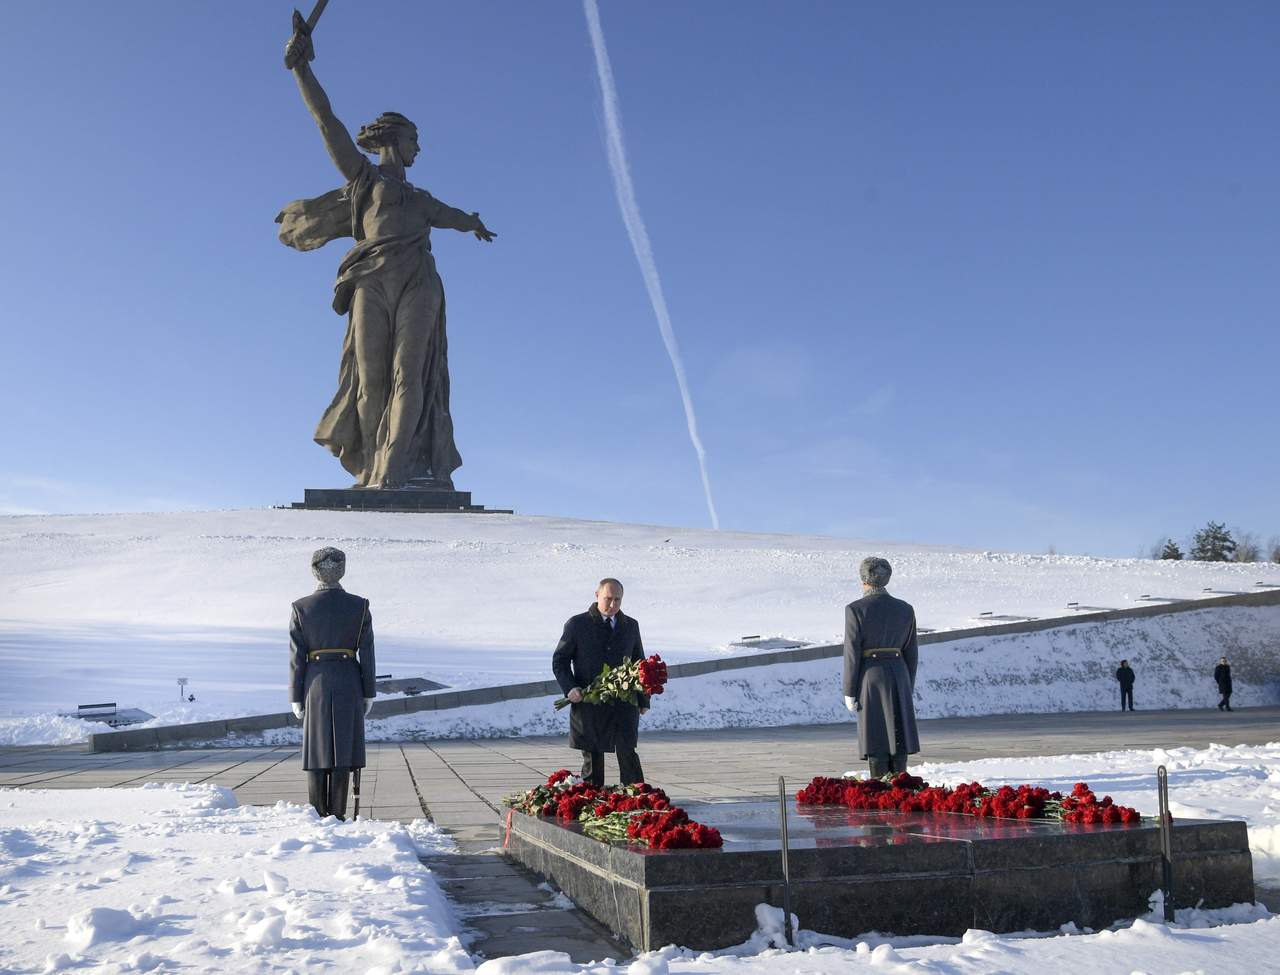 Valora. Putin, quien hizo una guardia de honor por los caídos, dijo que la Batalla en Stalingrado modificó la historia mundial.